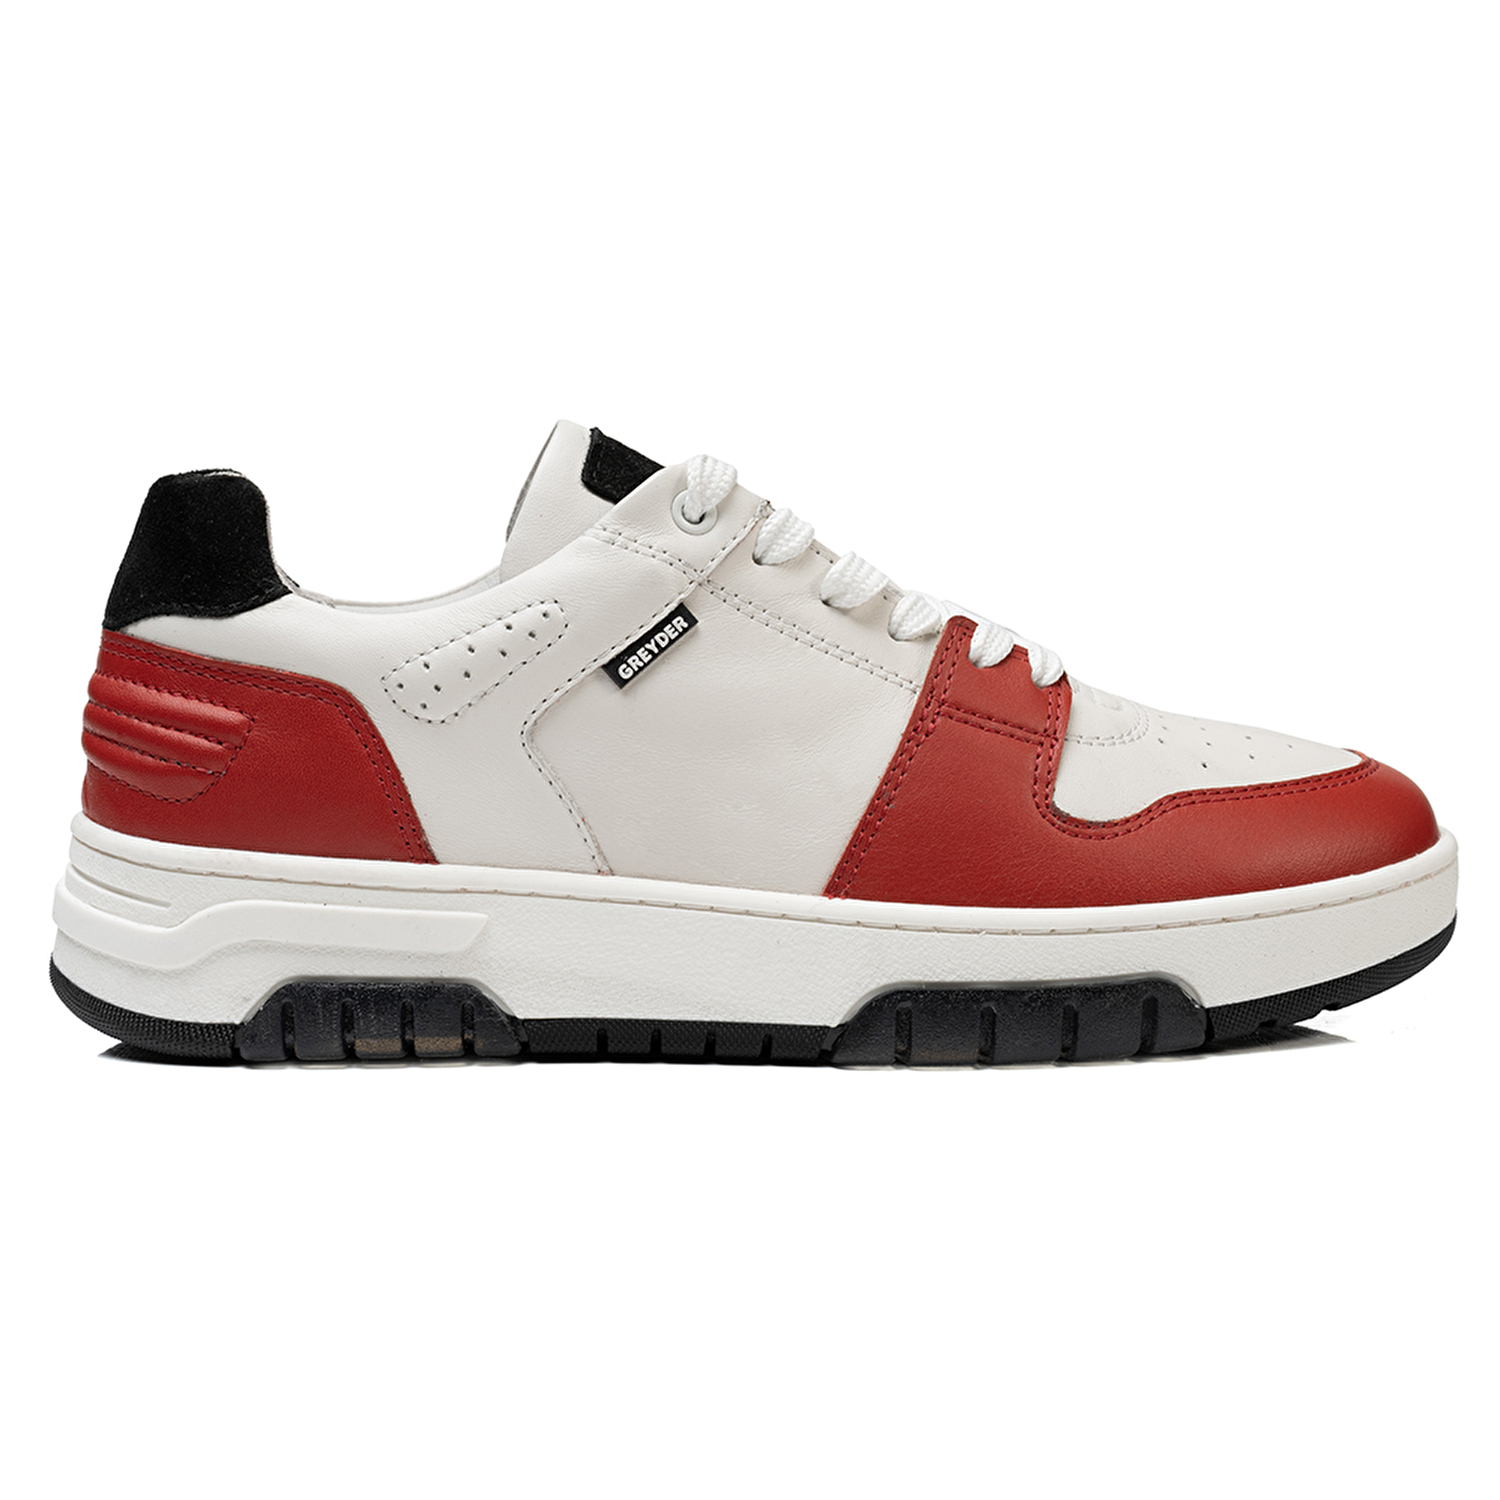 Kadın Beyaz Kırmızı Hakiki Deri Sneaker Ayakkabı 3K2SA33021-1